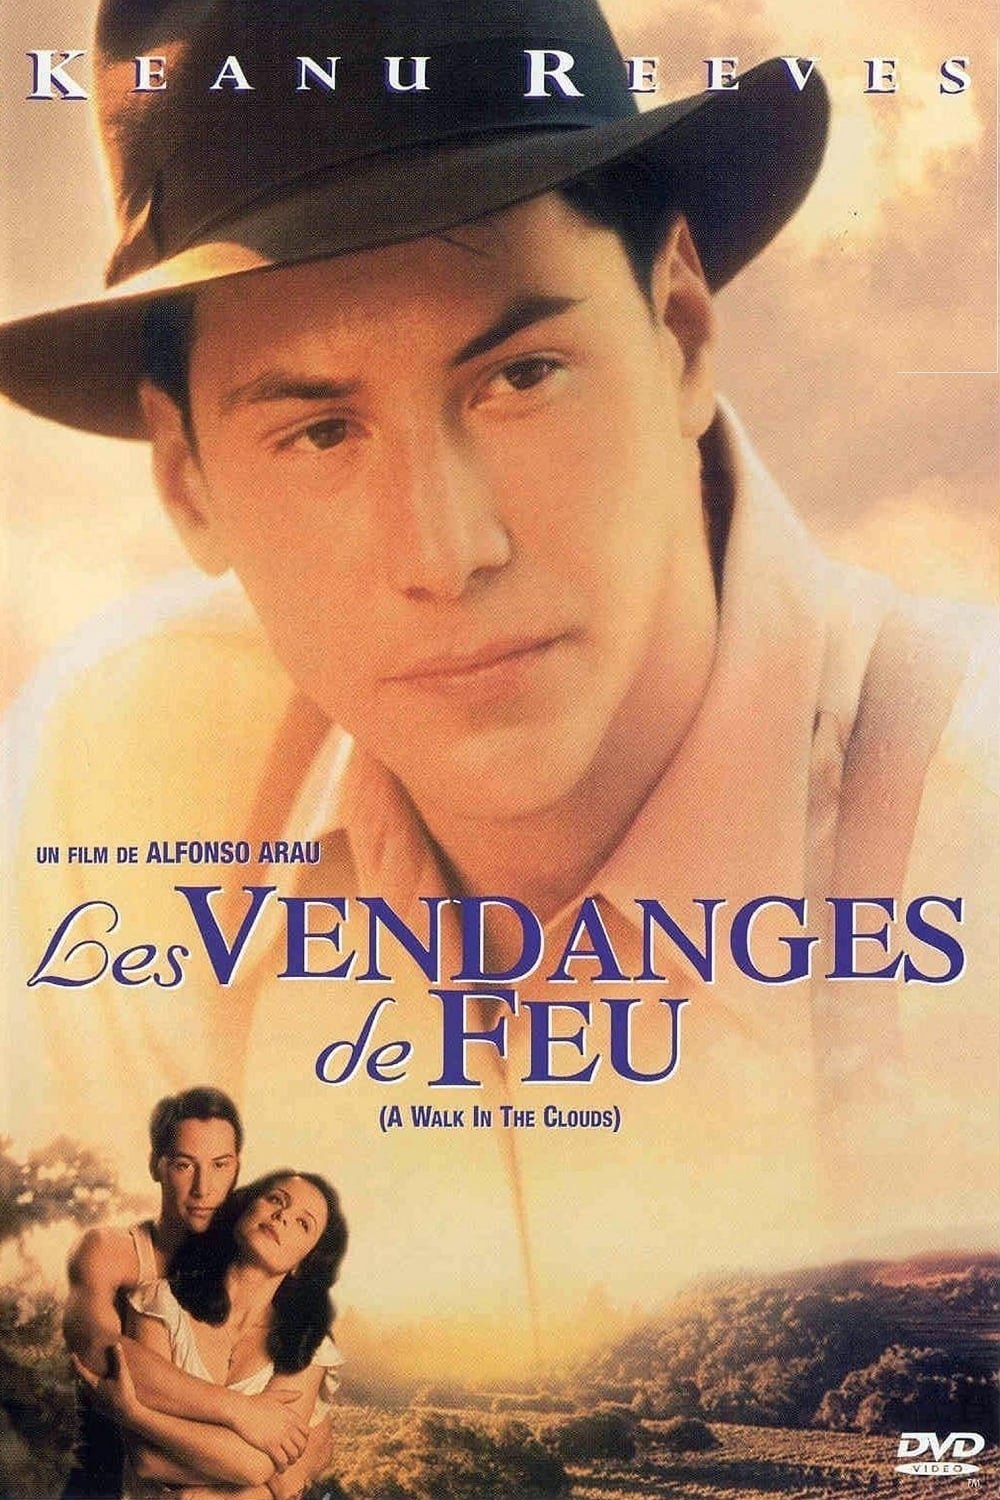 Poster of the movie Les Vendanges de feu